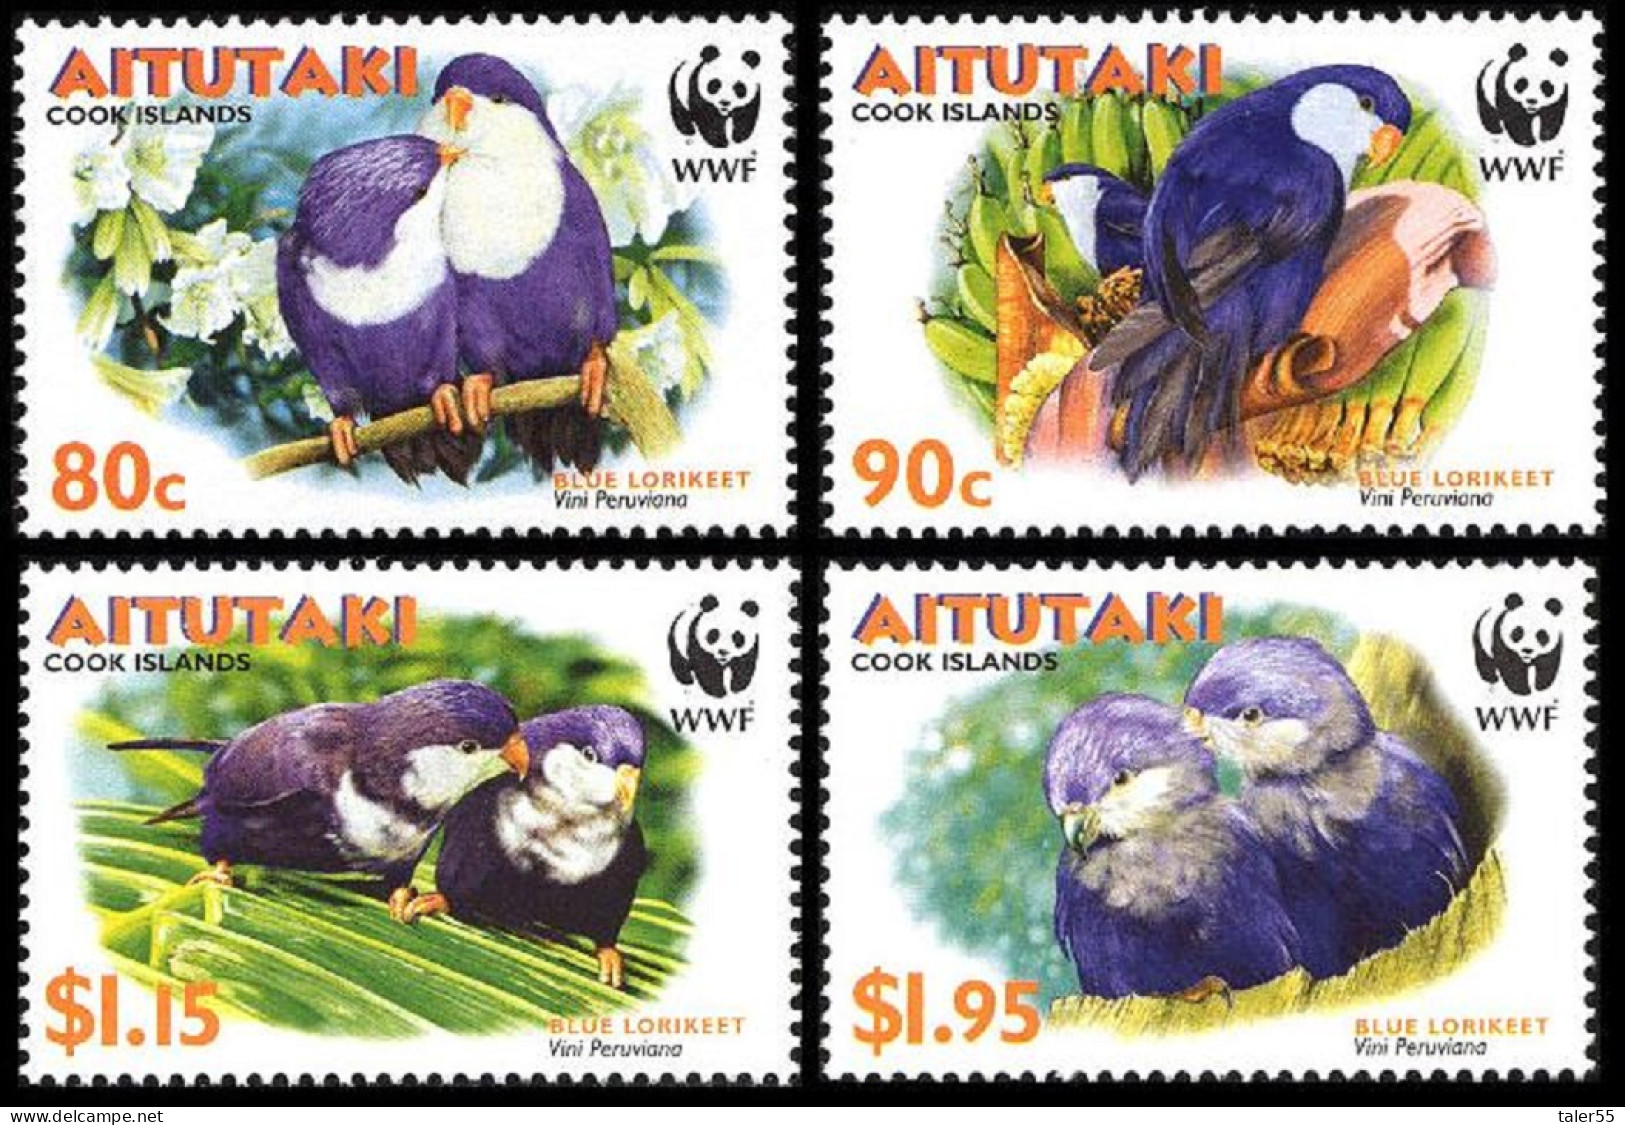 Aitutaki WWF Birds Tahitian Blue Lorikeet 4v 2002 MNH SG#717-720 MI#772-775 Sc#533-536 - Aitutaki